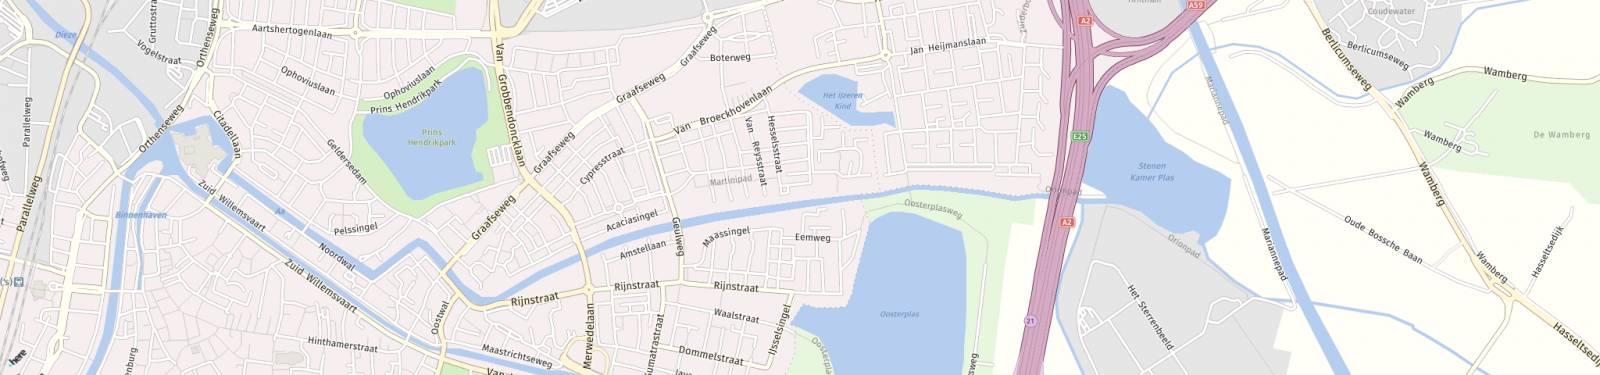 Kaart met locatie Appartement Bowierstraat